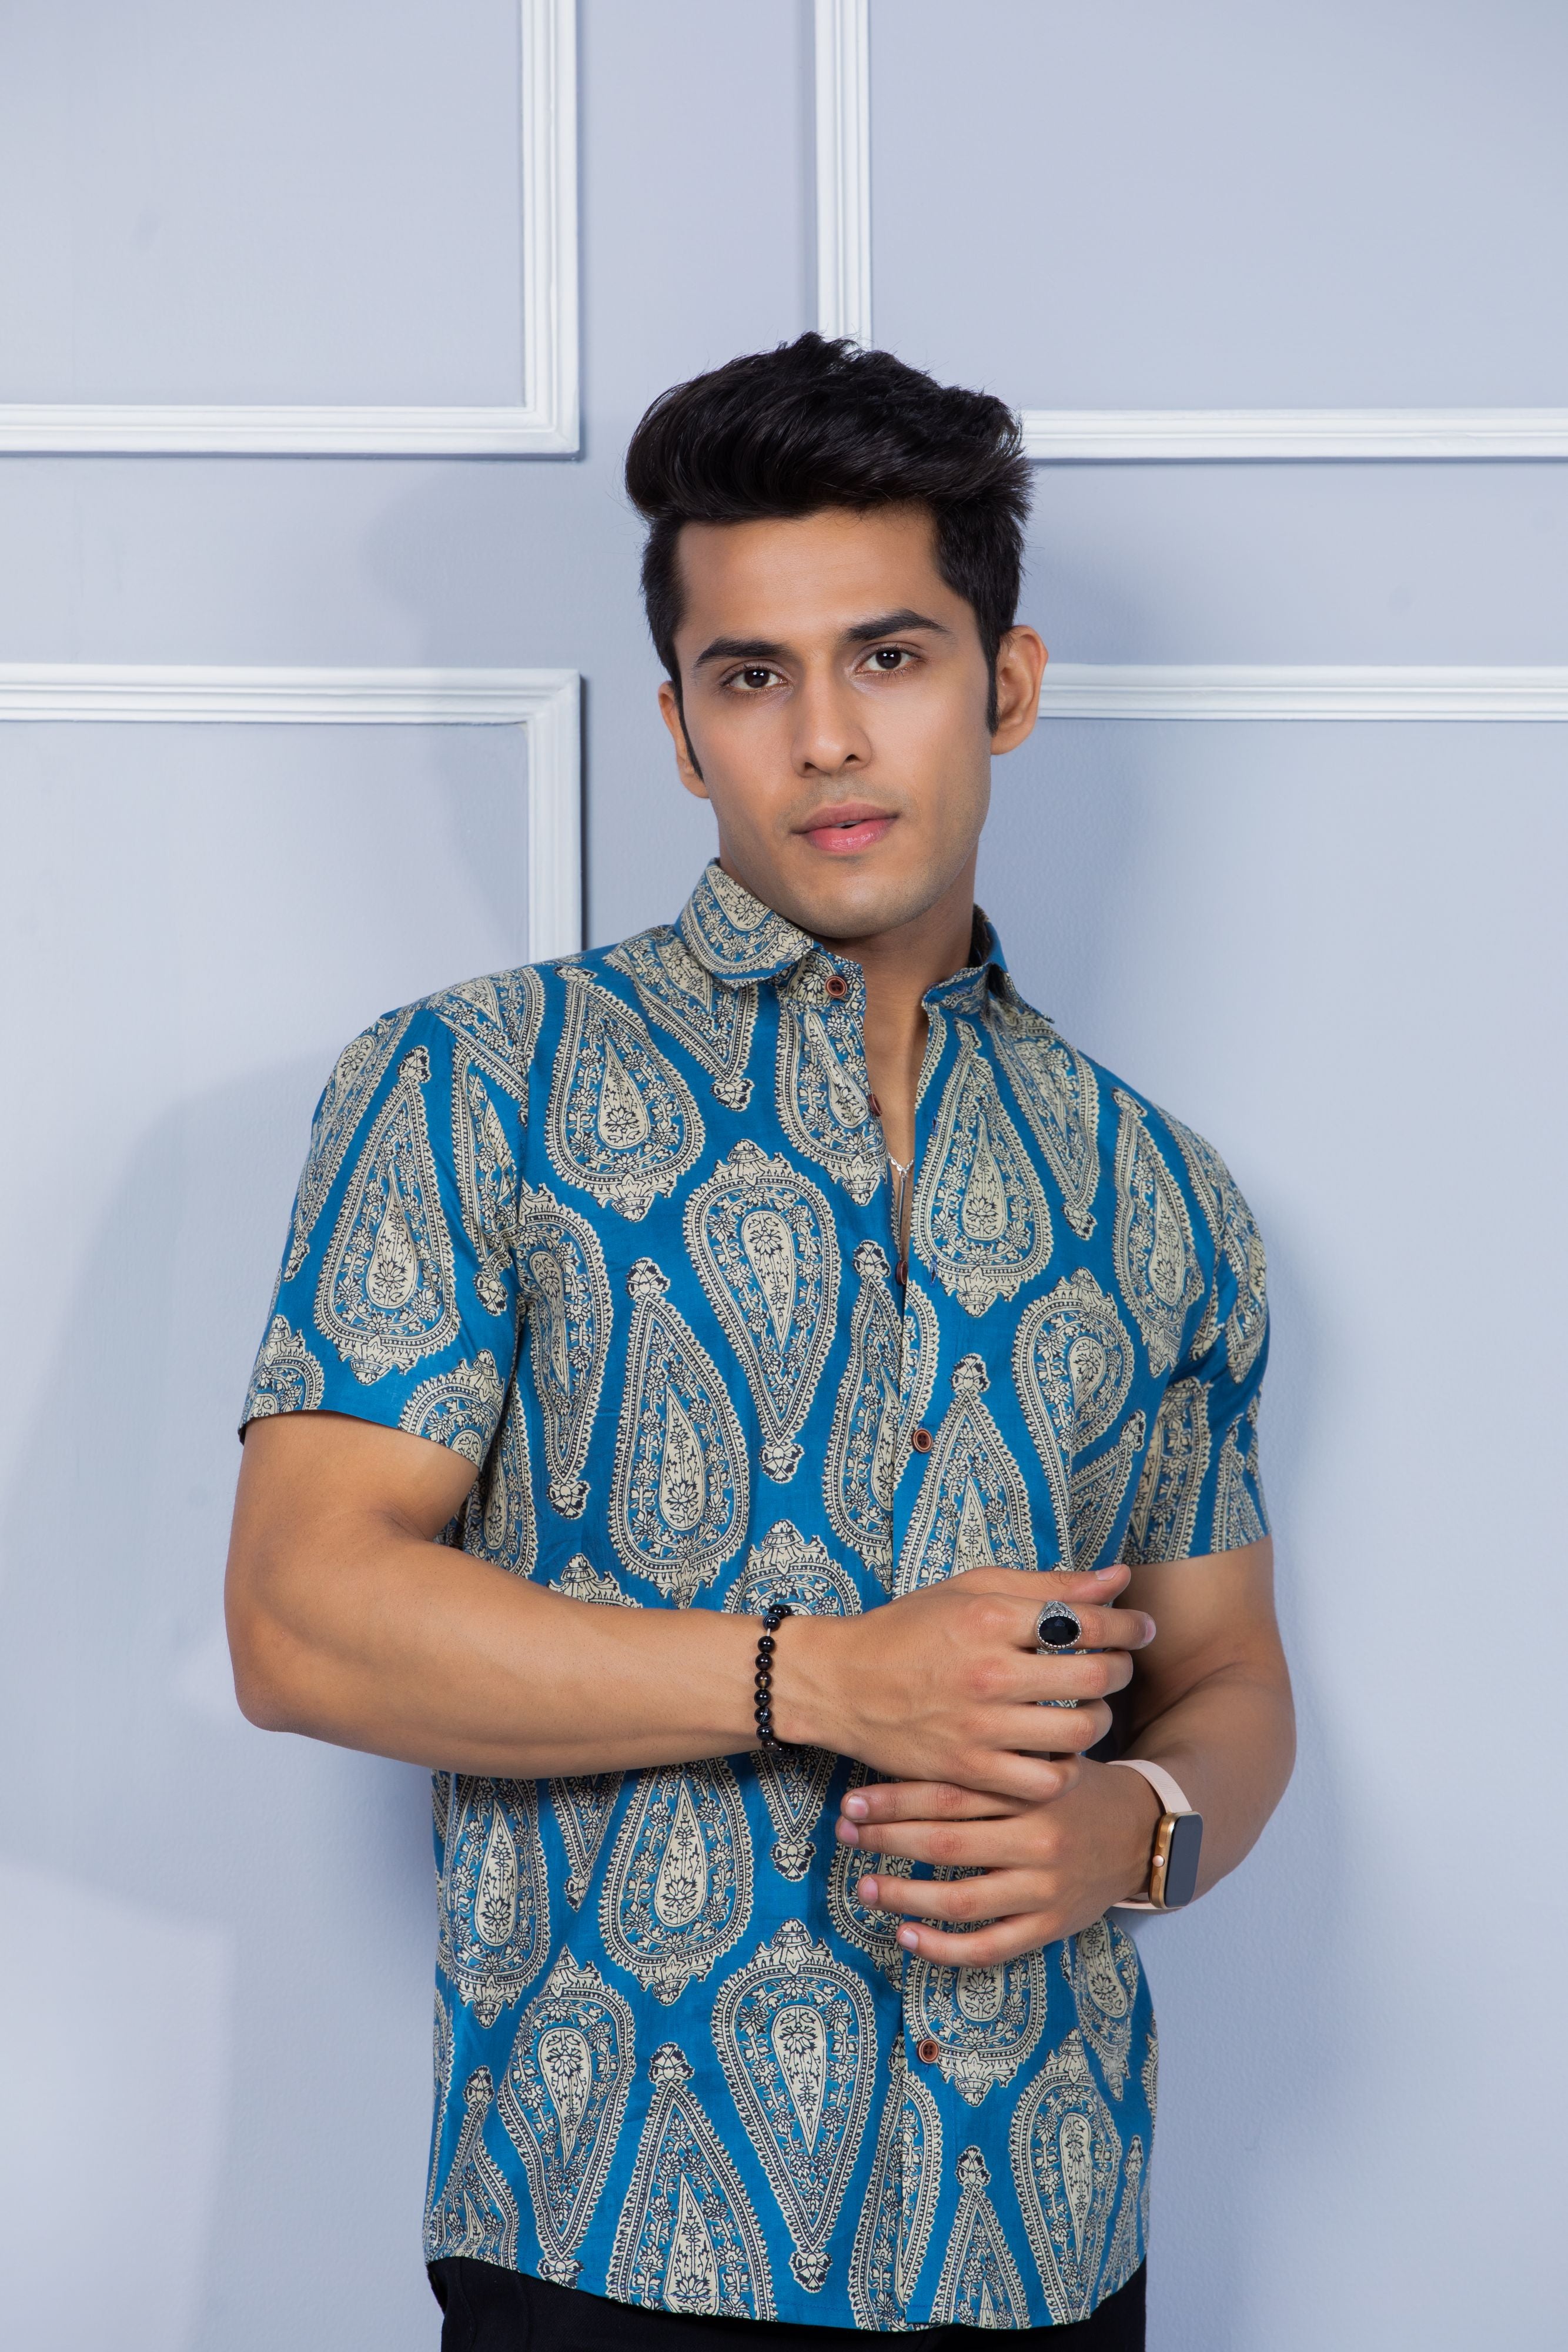 Firangi Yarn Ethnic Floral Printed Cotton Jaipuri Blue Shirt For Men